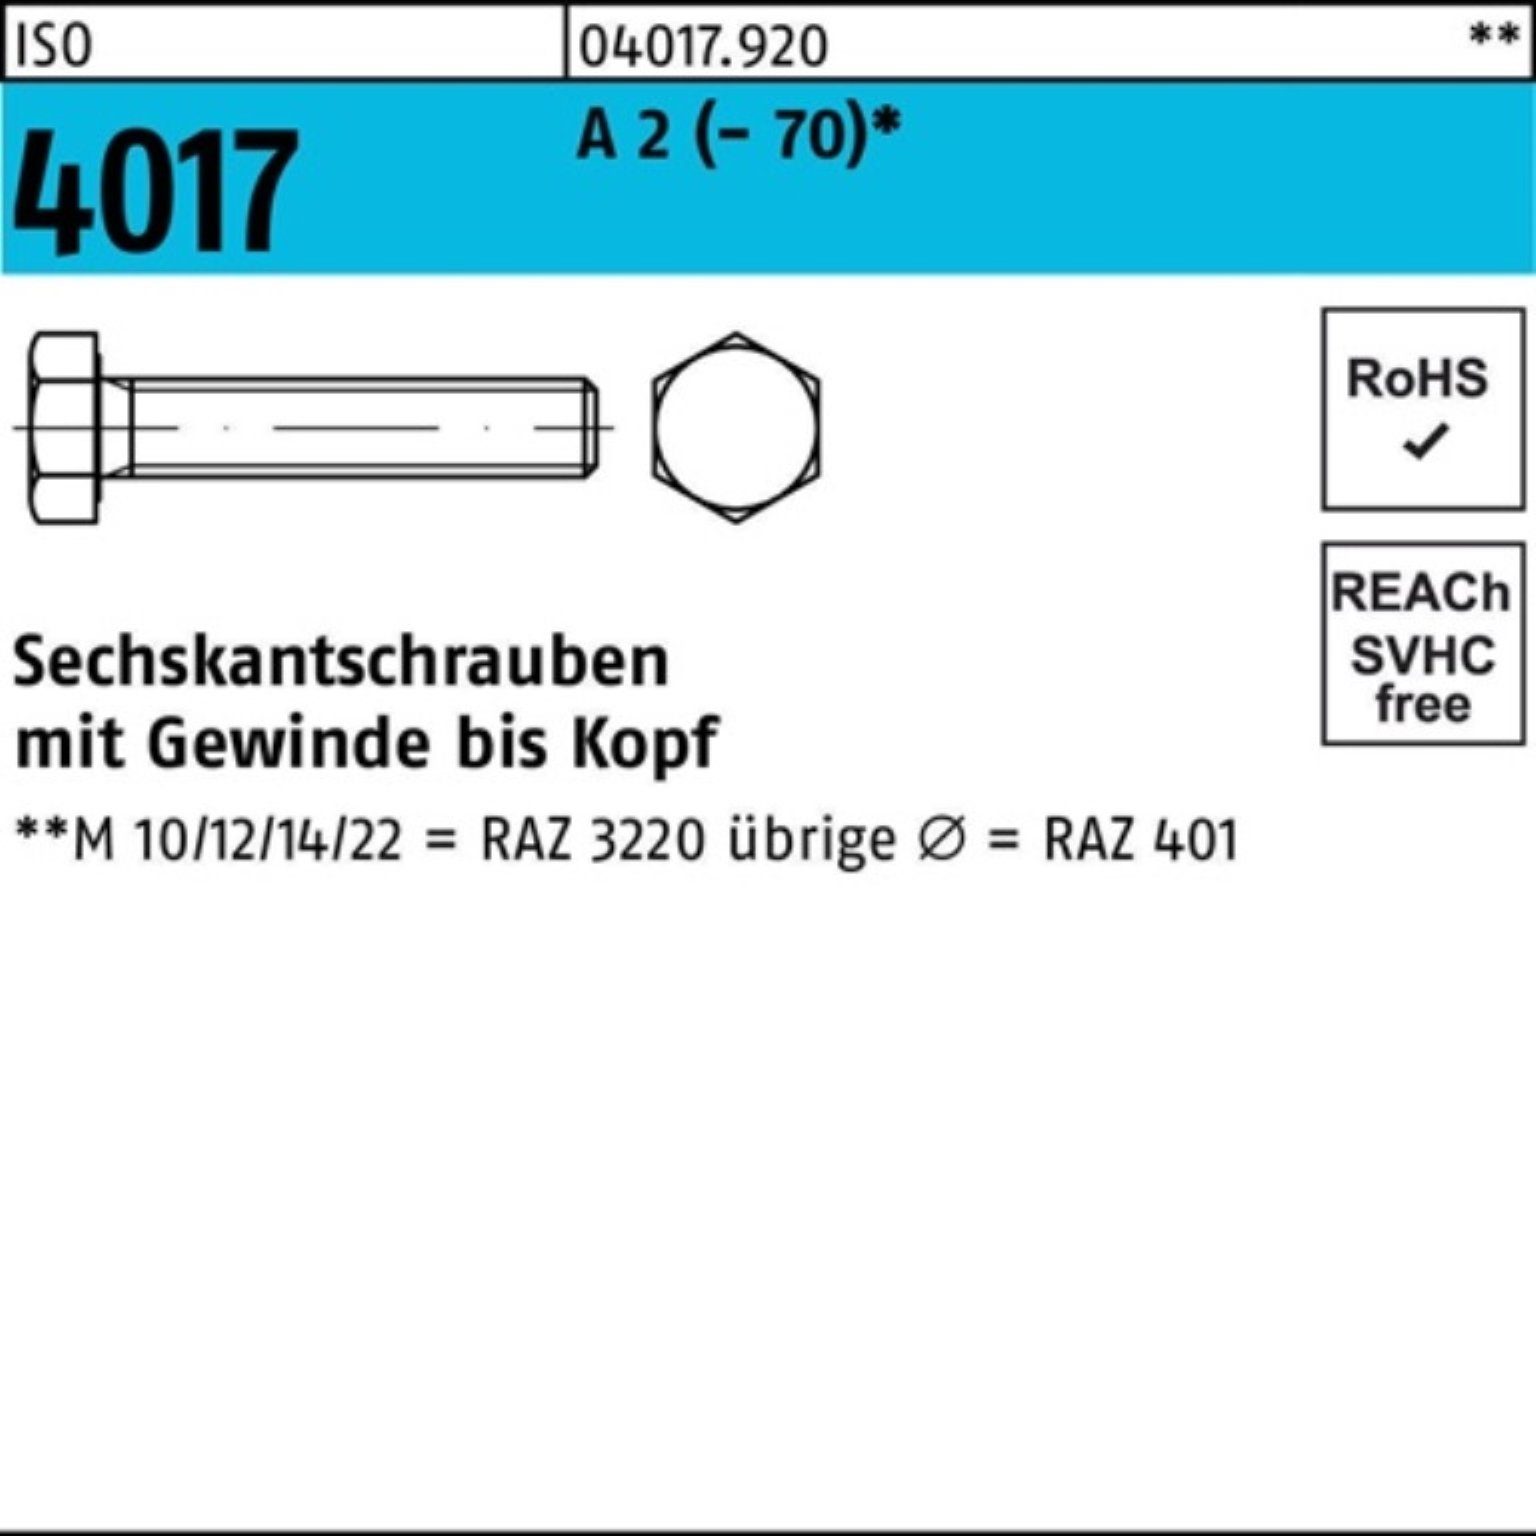 Bufab Sechskantschraube 100er Pack Sechskantschraube ISO 4017 VG M16x 65 A 2 (70) 25 Stück | Schrauben